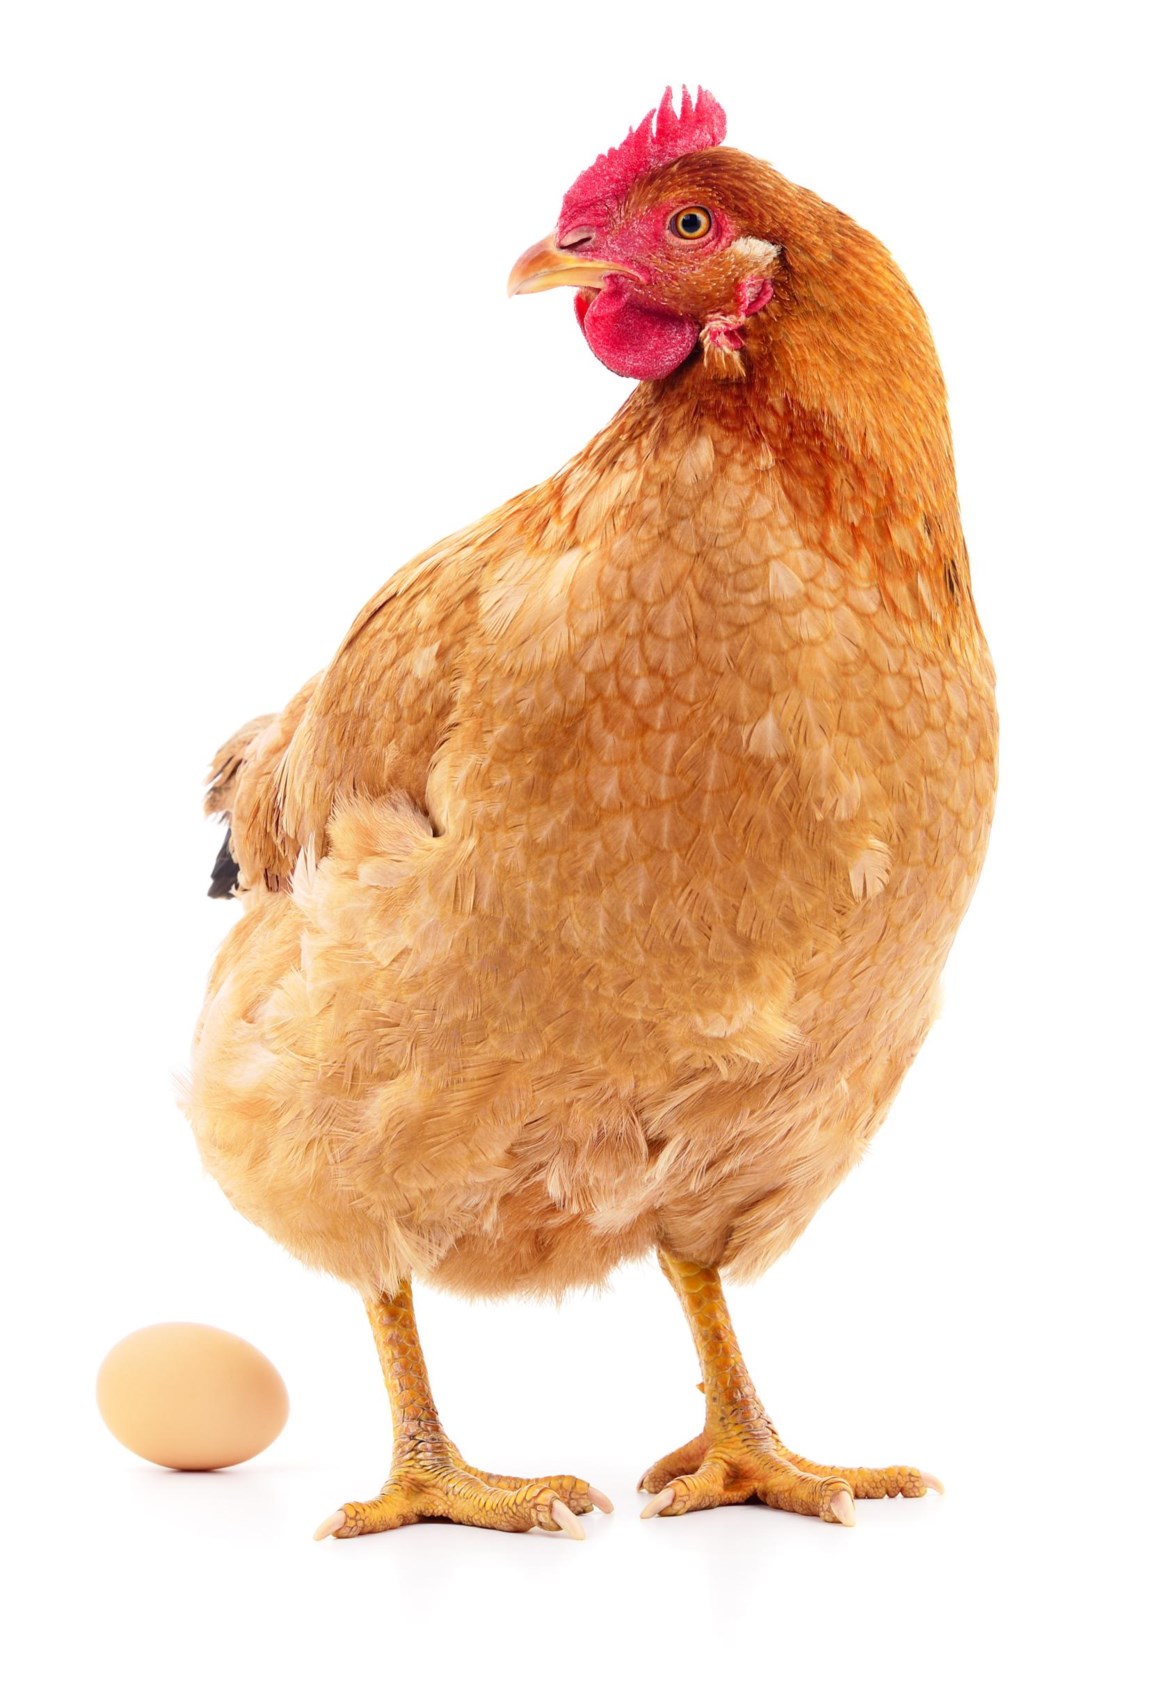 Wat als kippen eieren leggen met geneesmiddelen in? | De